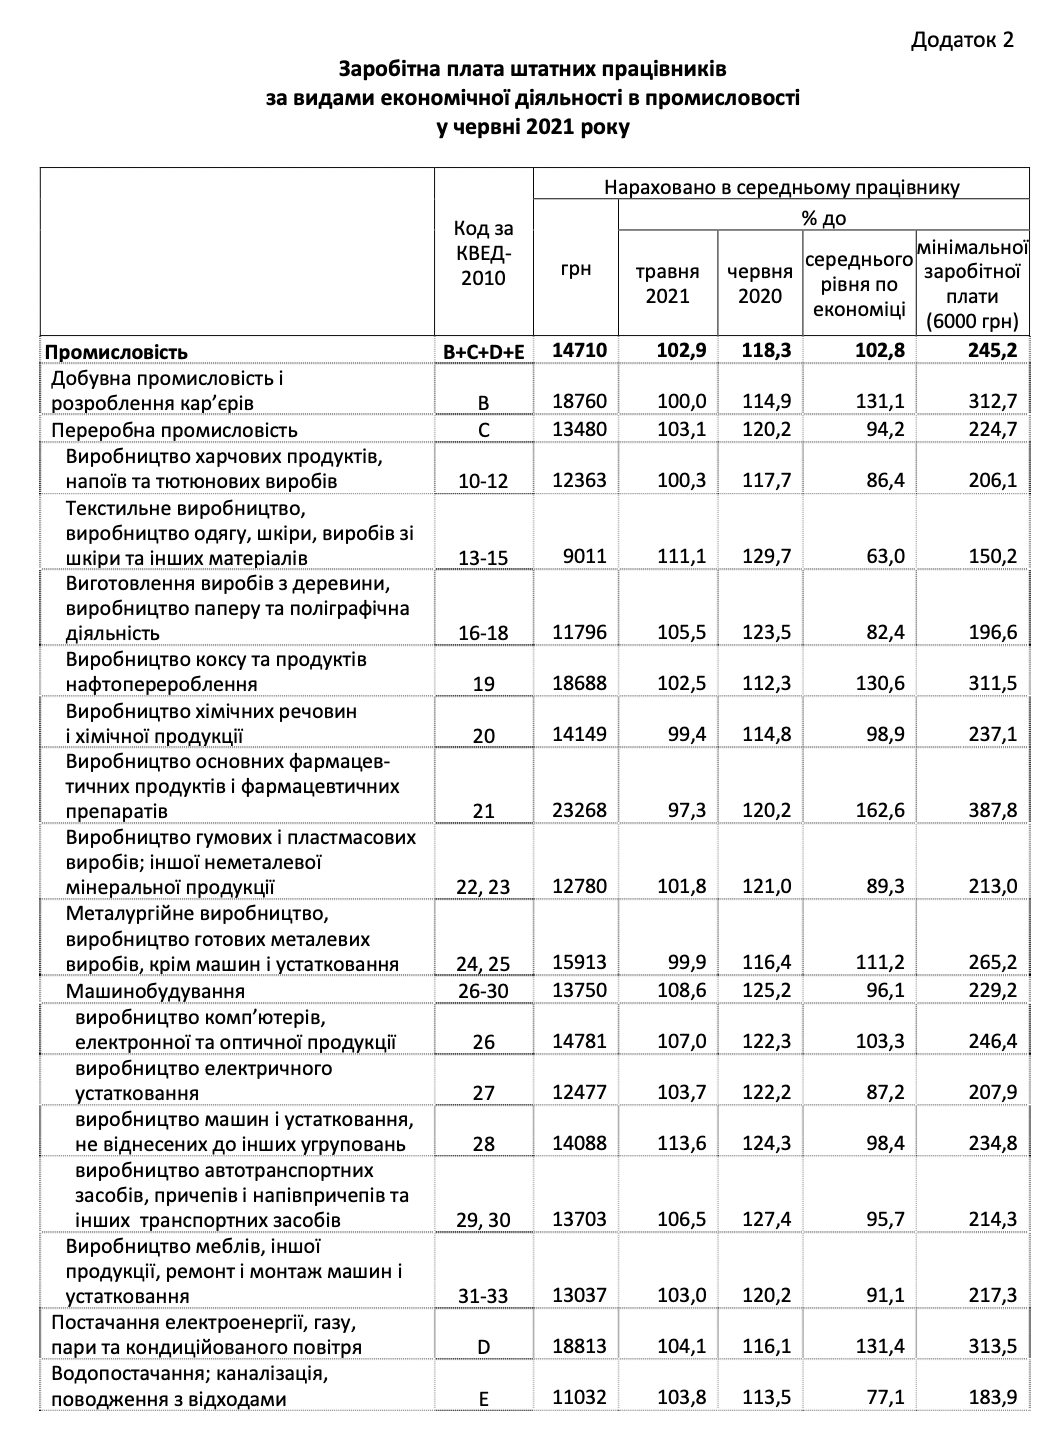 Средняя зарплата в Украине за год выросла почти на 25%